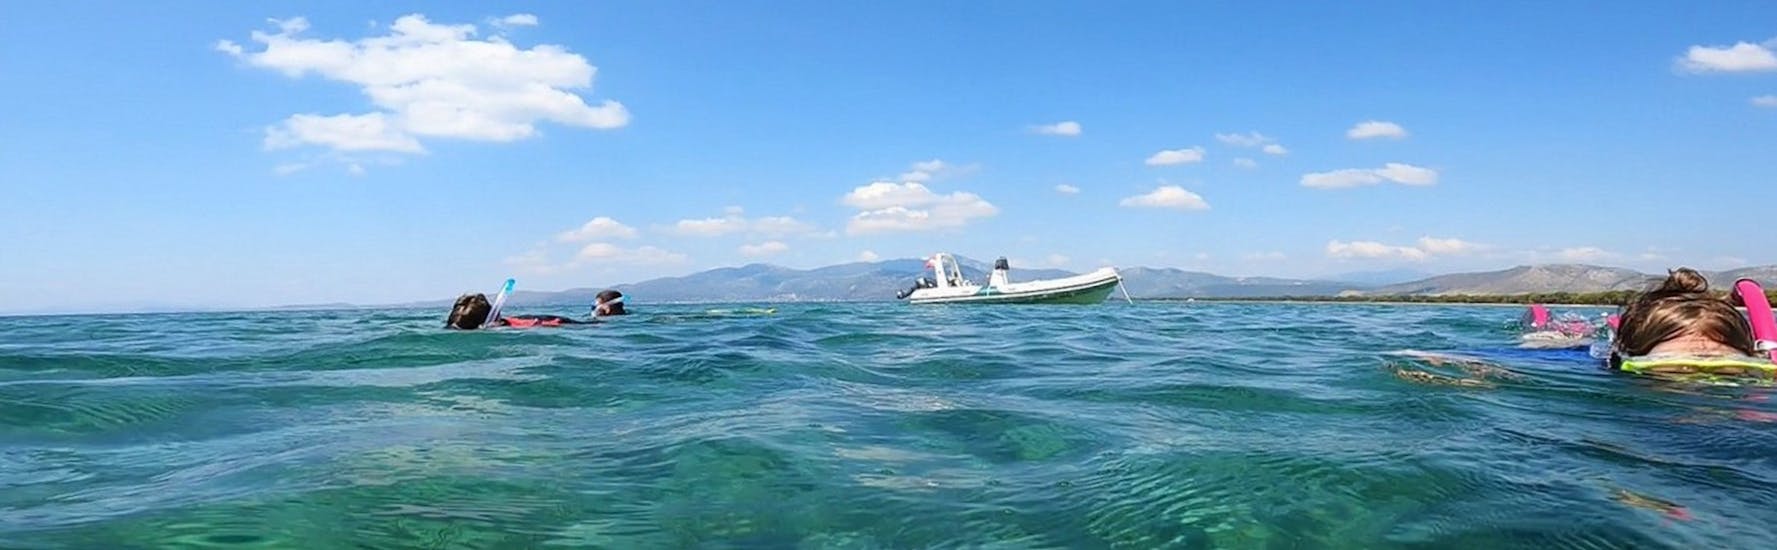 Boot op het water tijdens het snorkelen bij Athene - Nea Makri georganiseerd door Kanelakis Diving Experiences.